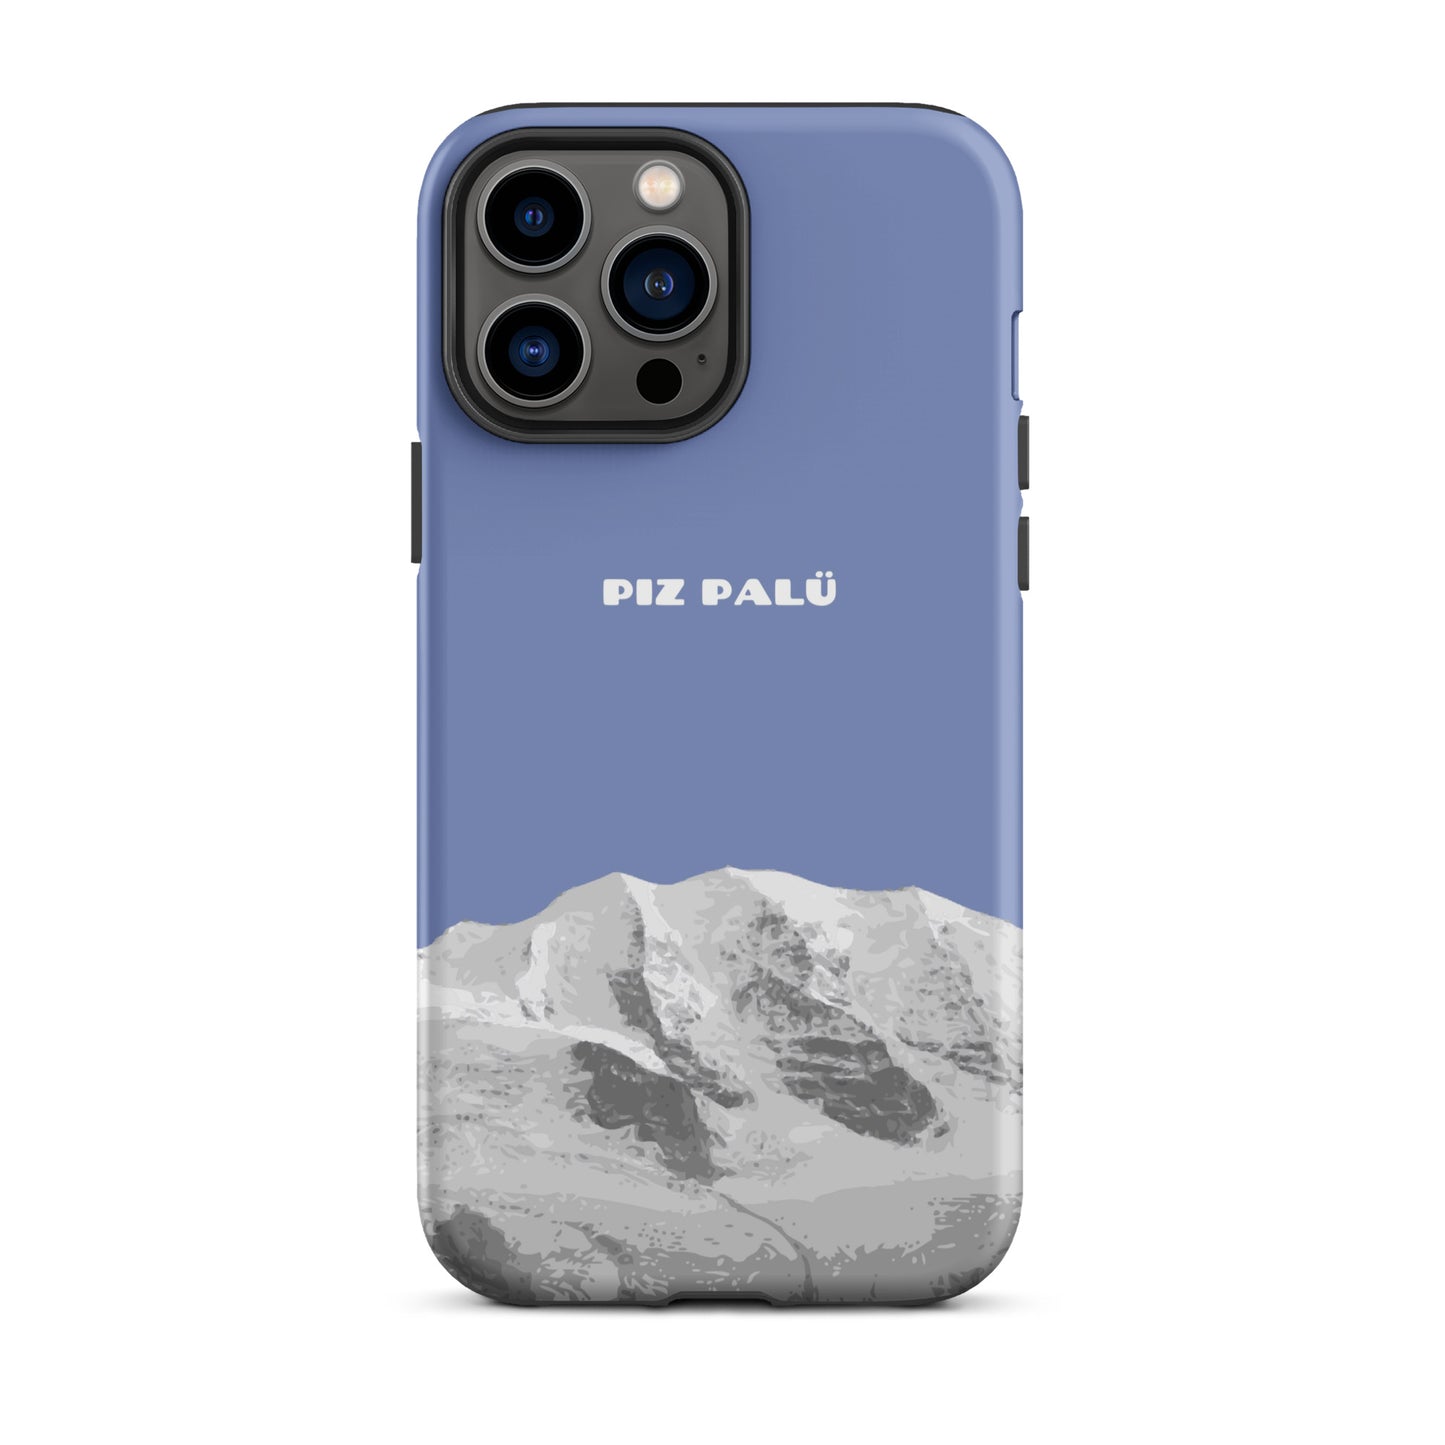 Hülle für das iPhone 13 Pro Max von Apple in der Farbe Pastellblau, dass den Piz Palü in Graubünden zeigt.